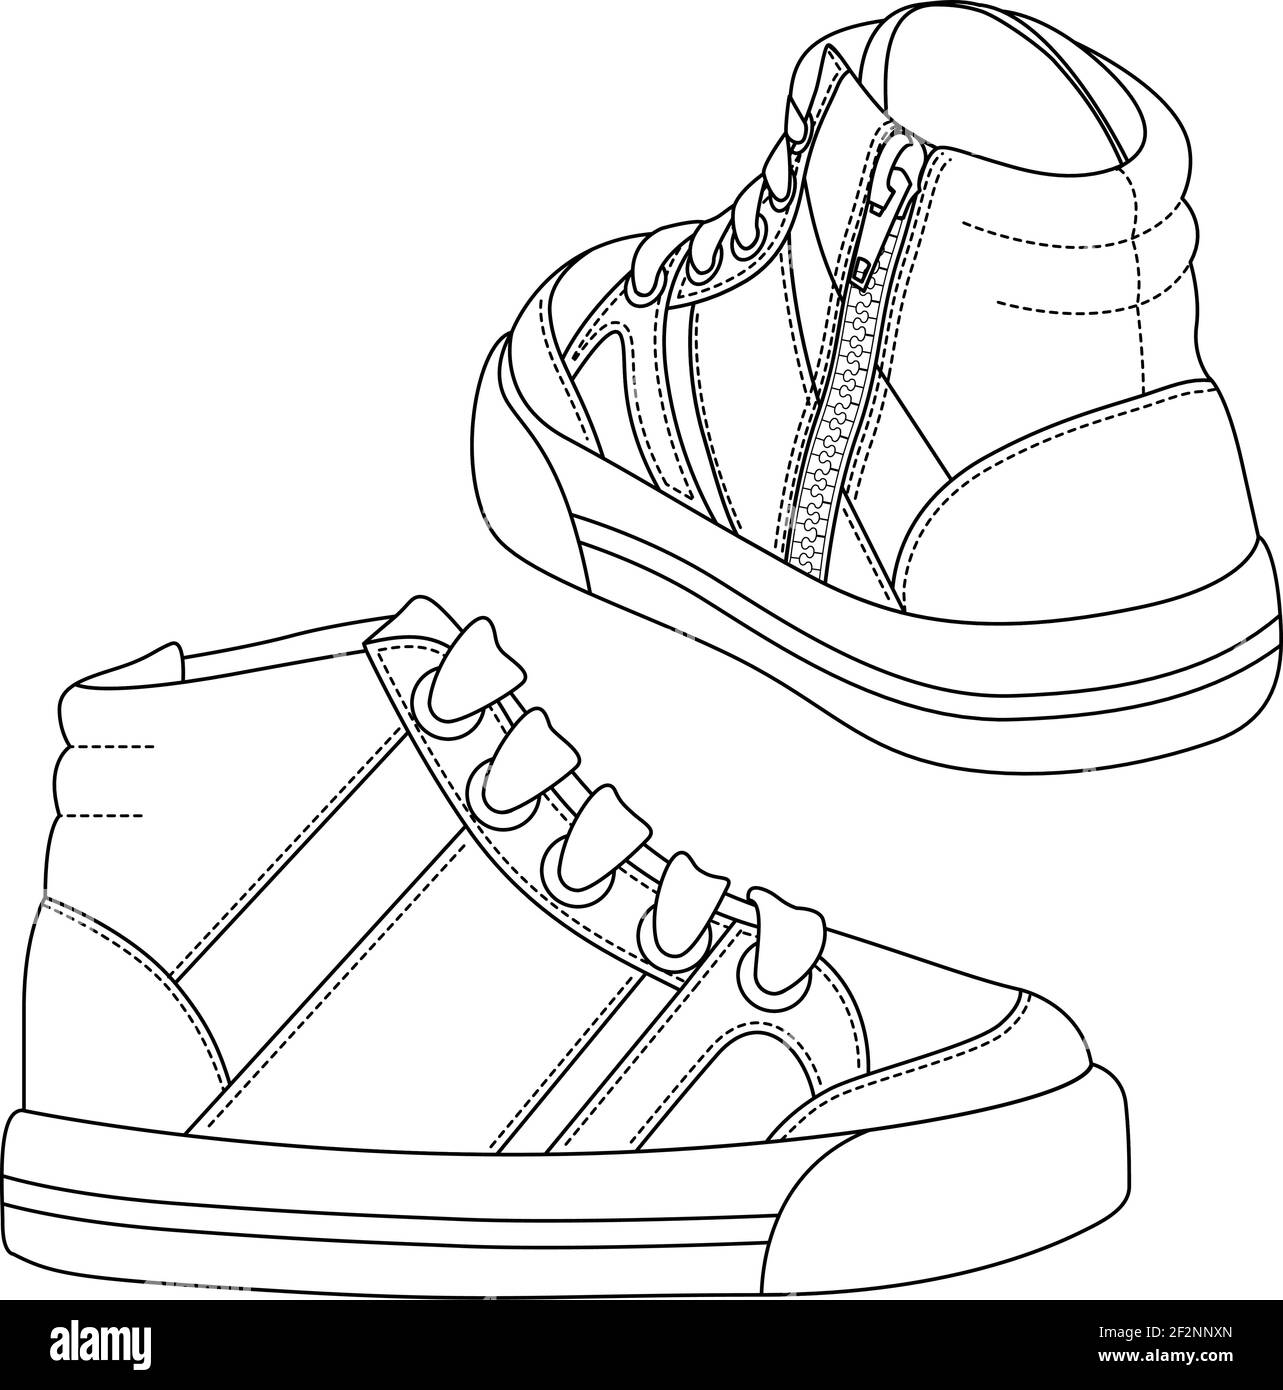 Disegni di contorno di Kids Sneakers. Boys Shoes modello di schizzo piatto alla moda. Illustrazione tecnica della moda della scarpa atletica. Linee nere di scarpe sportive su WI Illustrazione Vettoriale